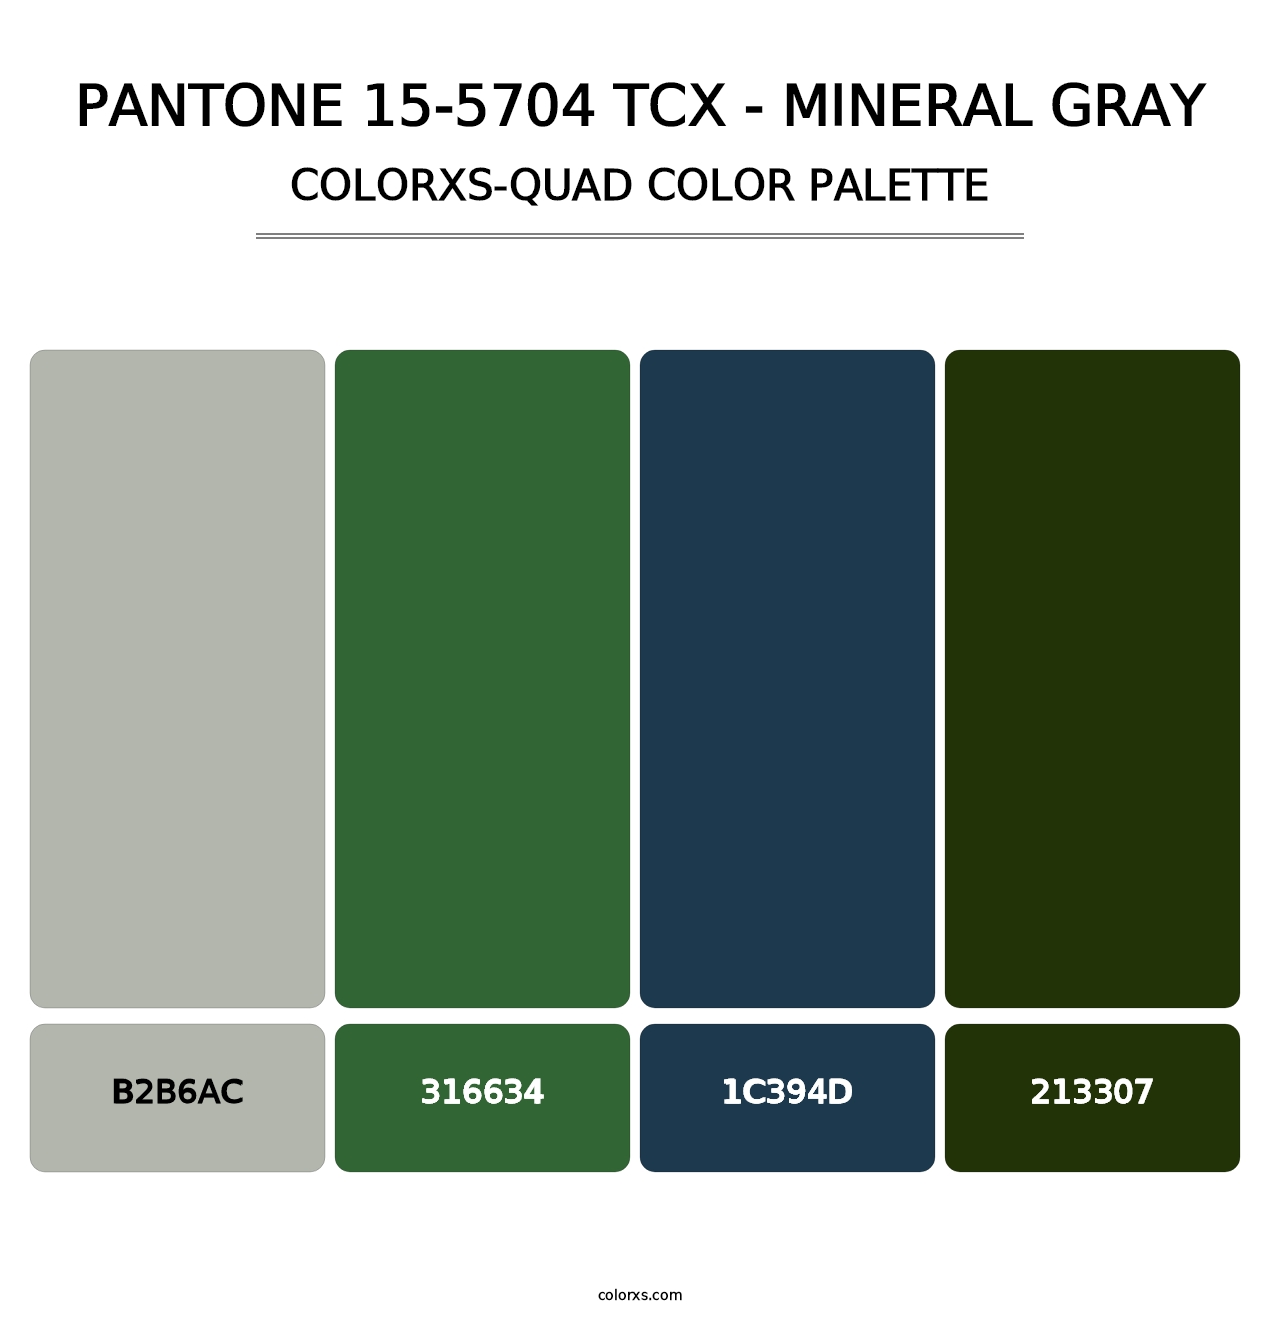 PANTONE 15-5704 TCX - Mineral Gray - Colorxs Quad Palette